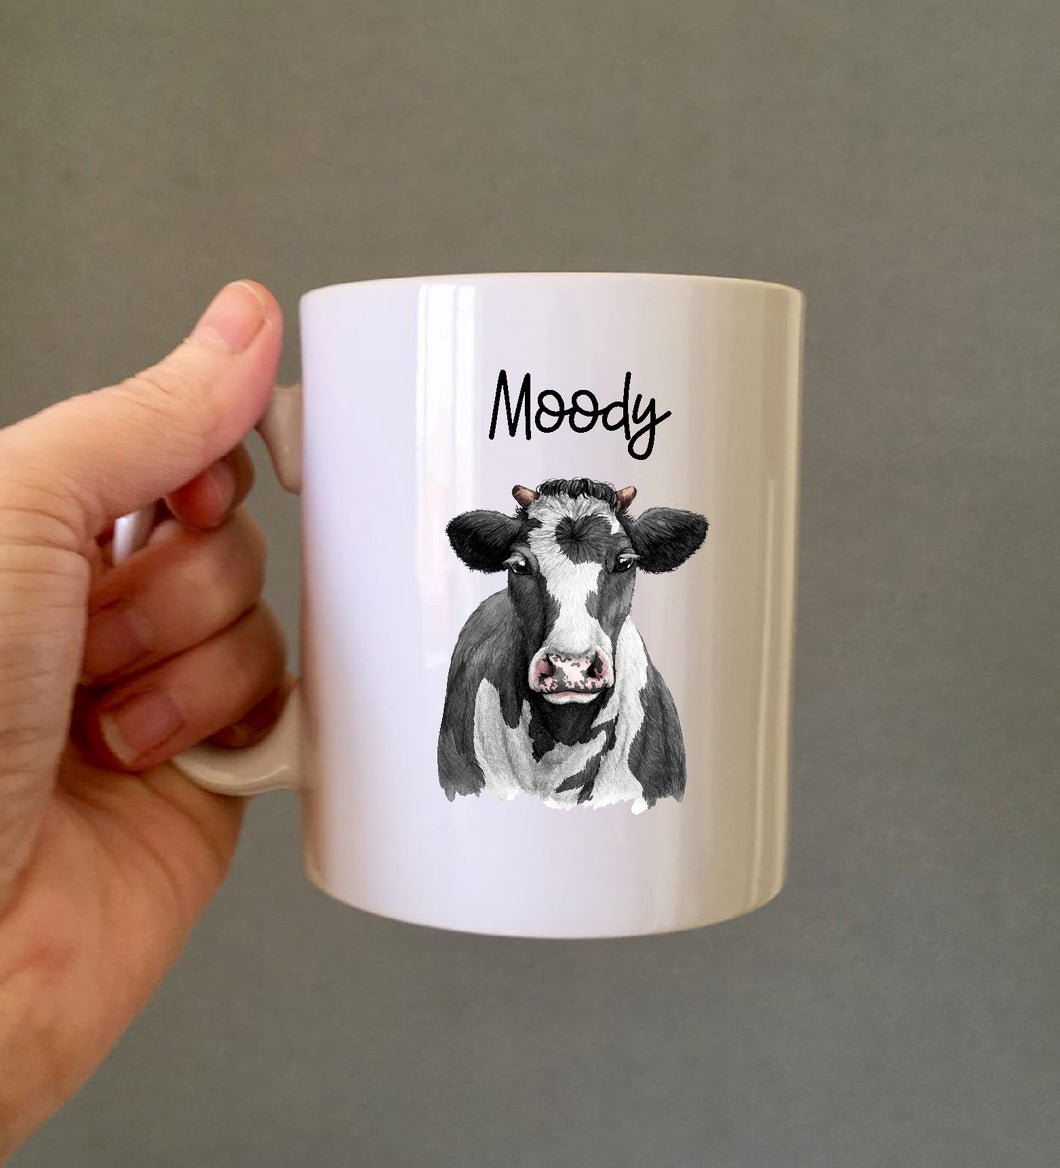 Moody Cow Ceramic Printed Mug